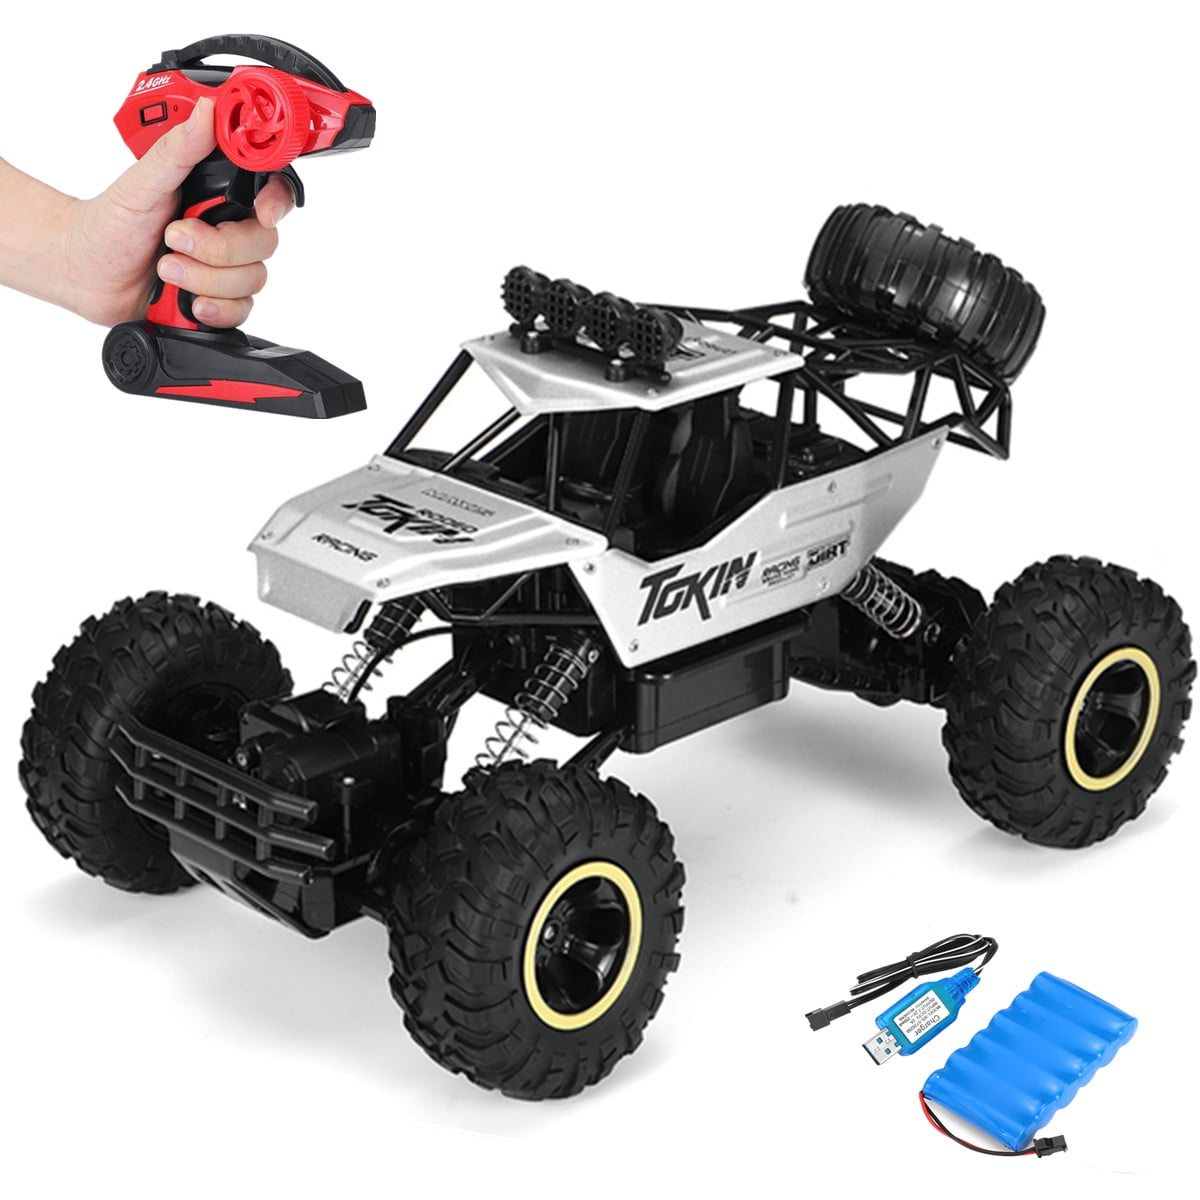 IFLYING RC Car 1:16 radio remote control car 2.4 GHz remote control buggy car toy remote control off-road vehicle toy car